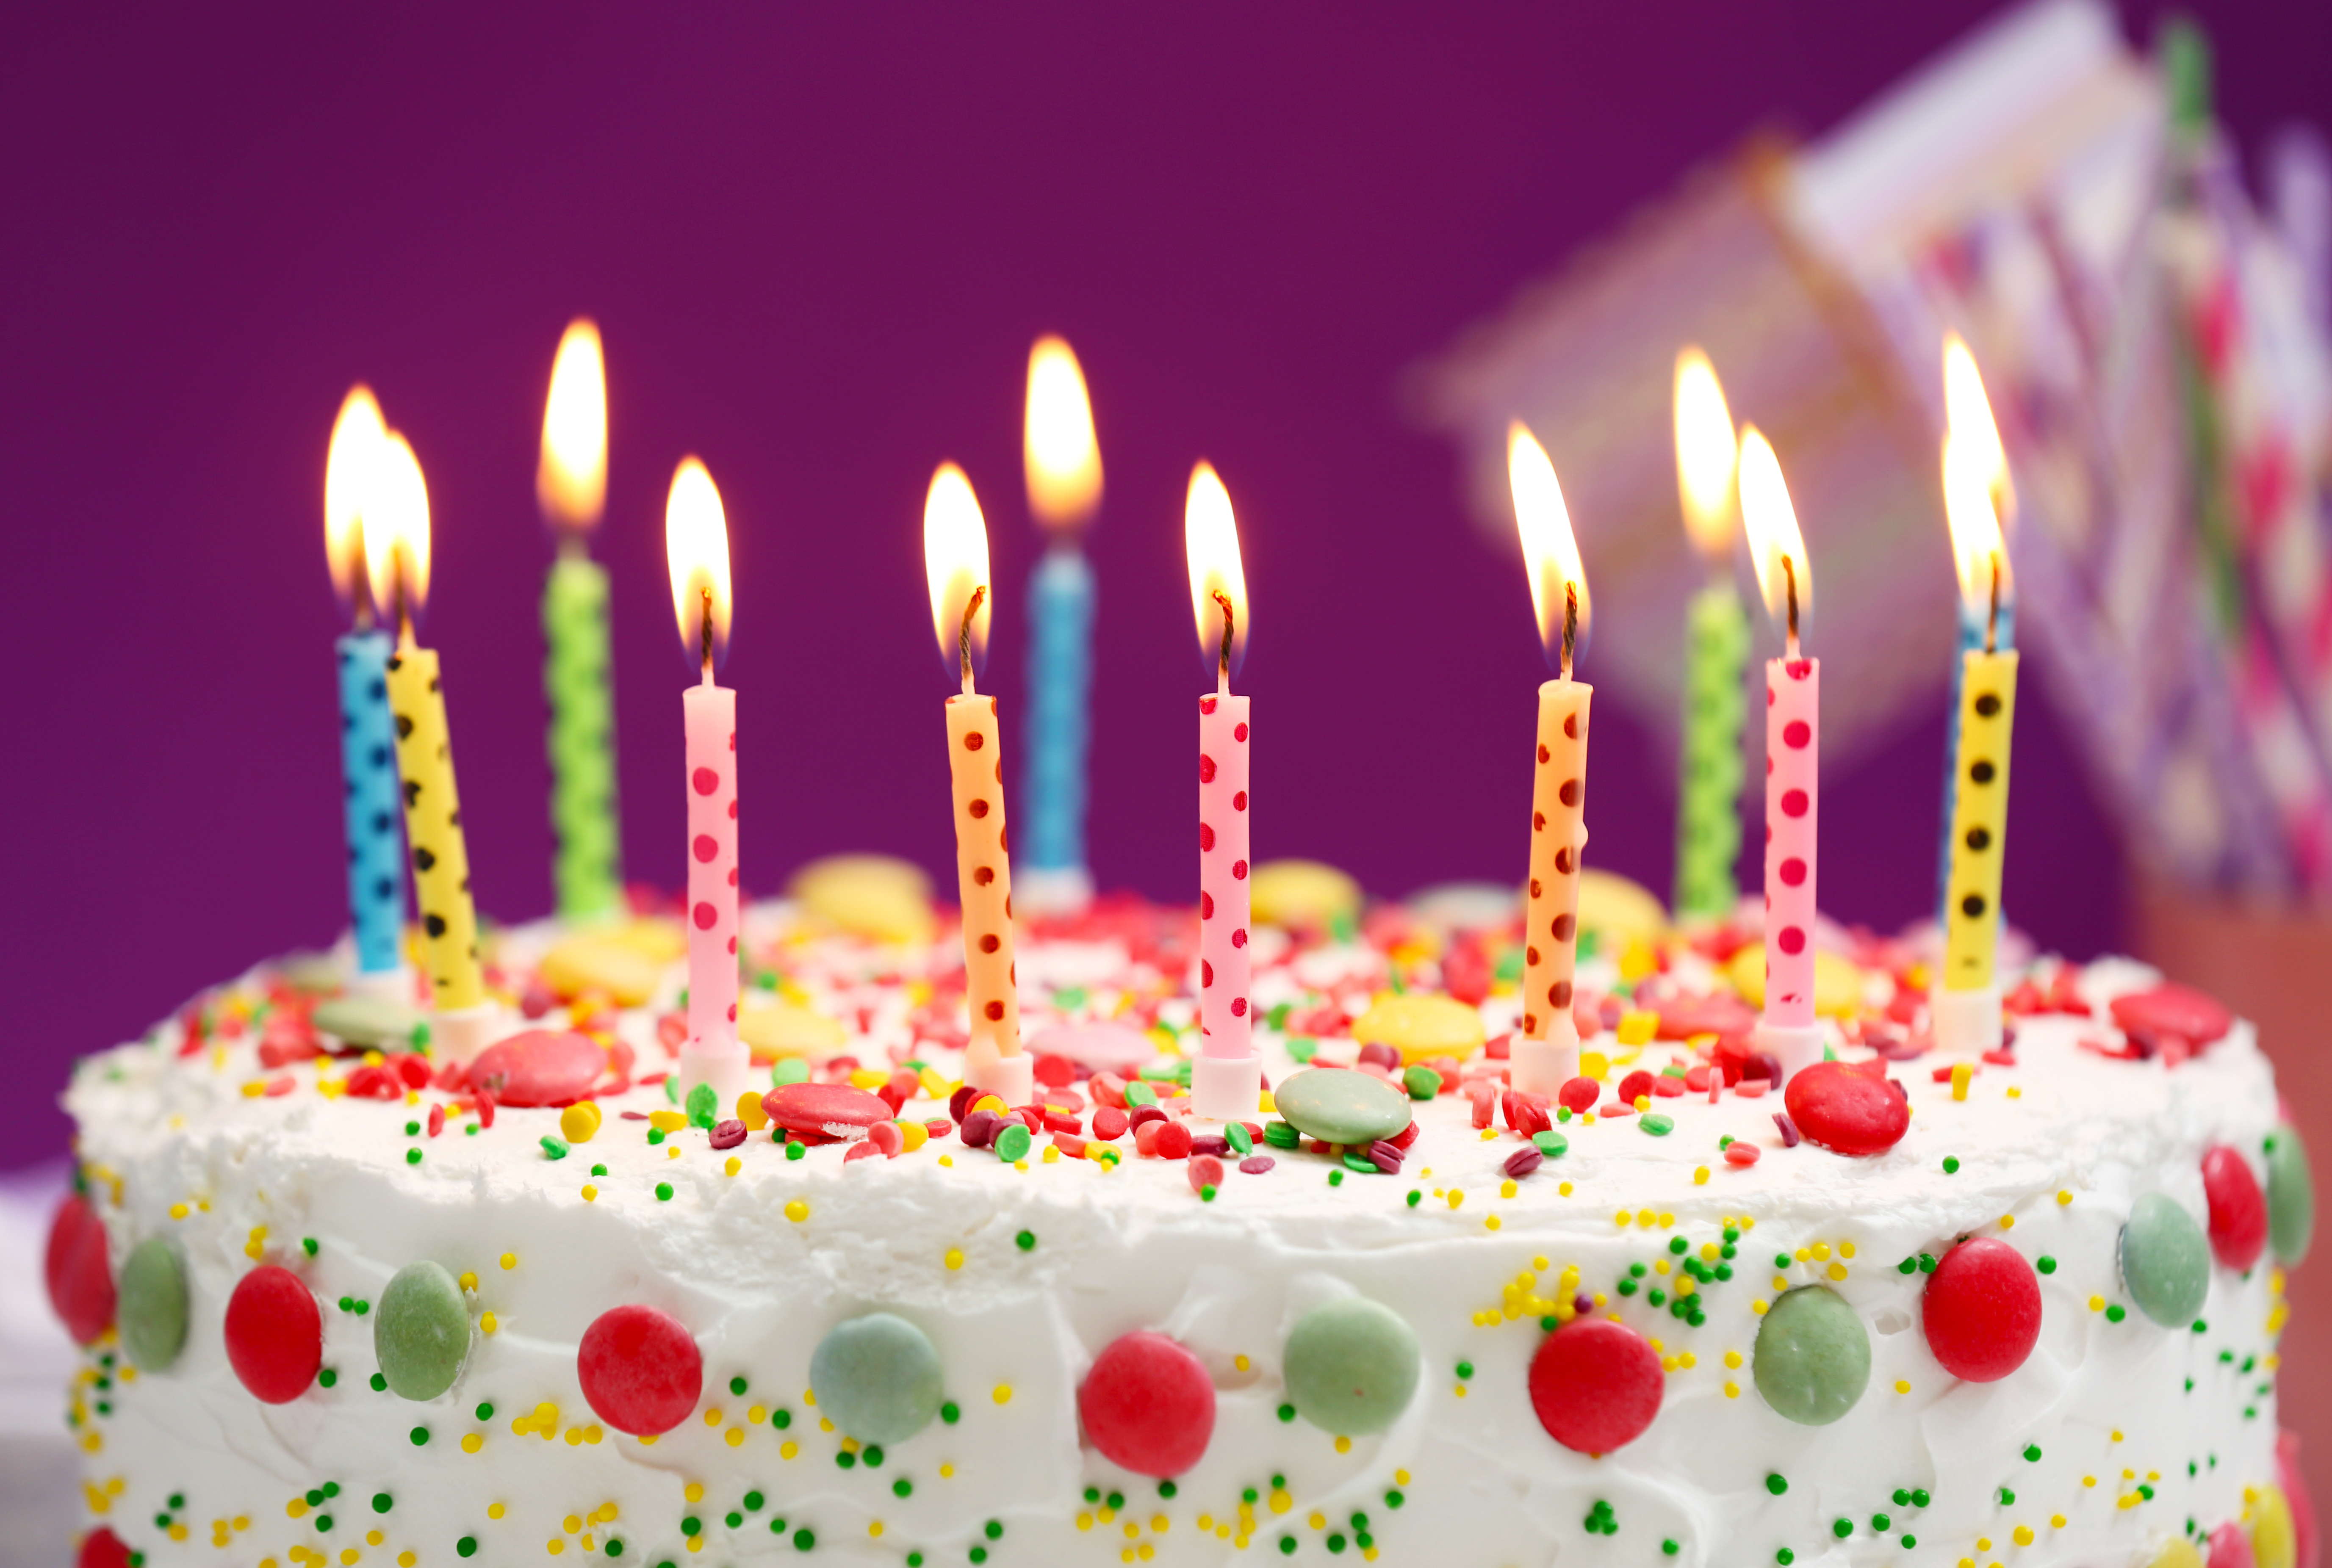 C f b day. Тортик с днем рождения. Красивые торты на день рождения. Свечи для торта. Открытка с днём рождения торт.